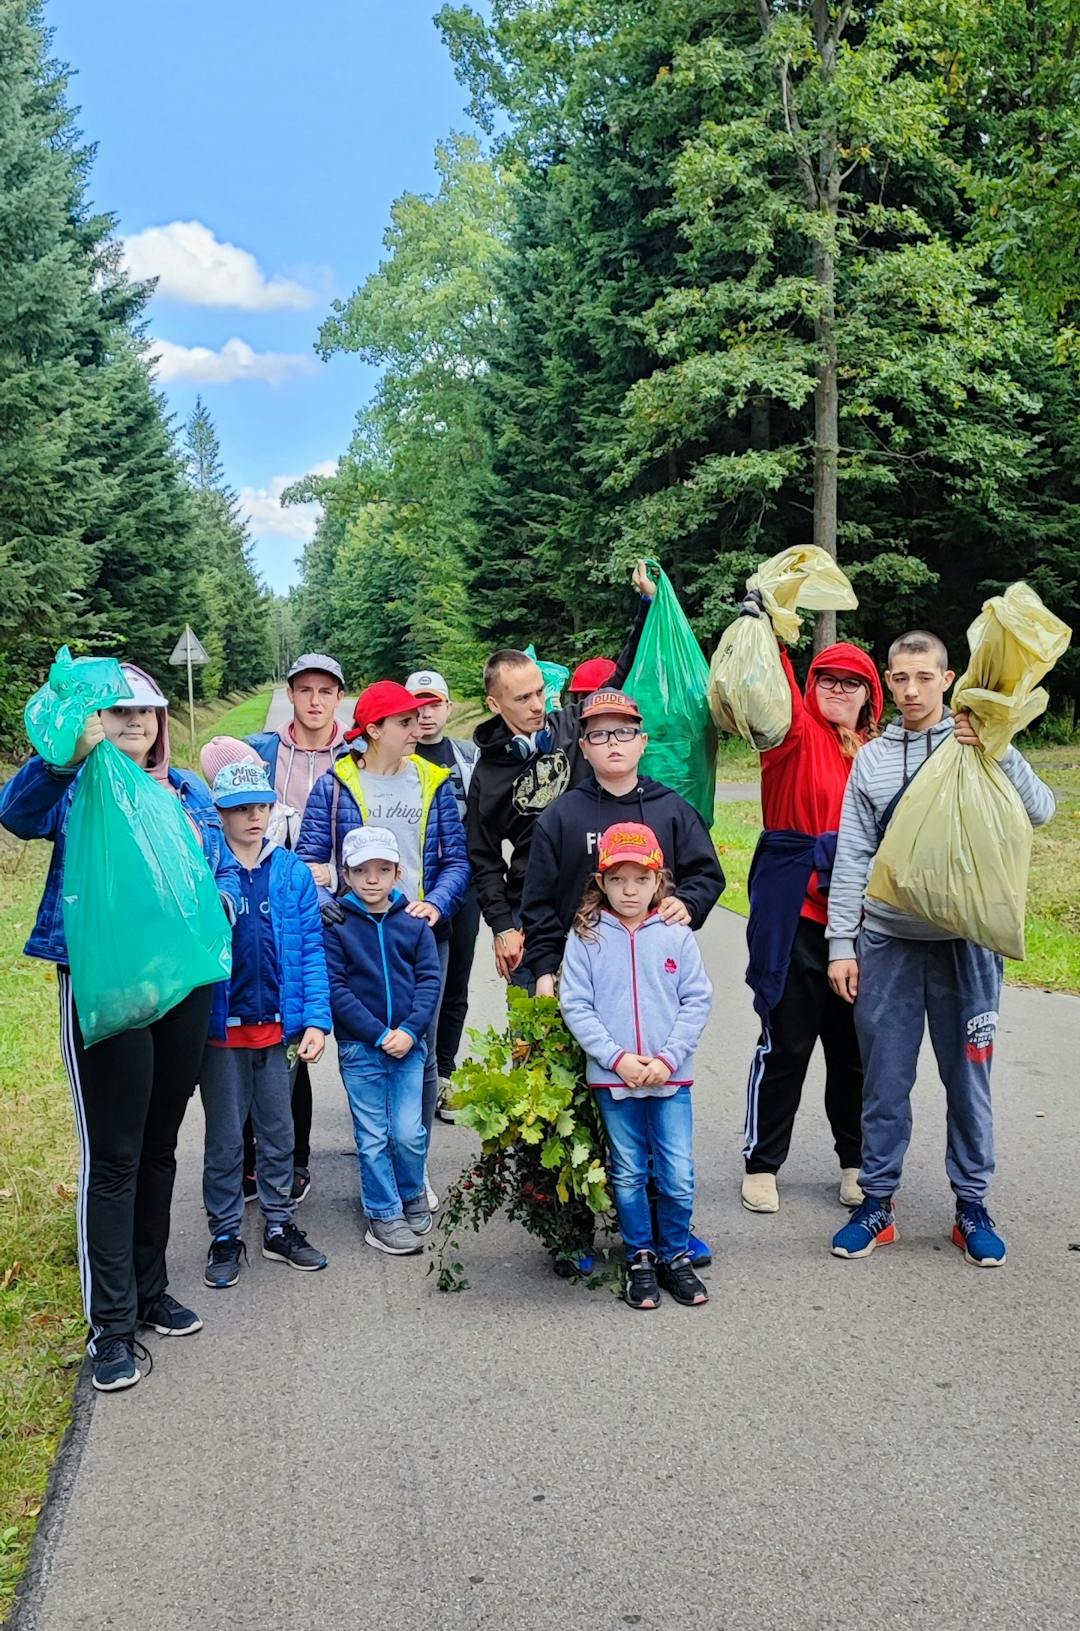 W rezerwacie przyrody Jedlina | dzieci pokazują zebrane śmieci w workach w tle las.jpg